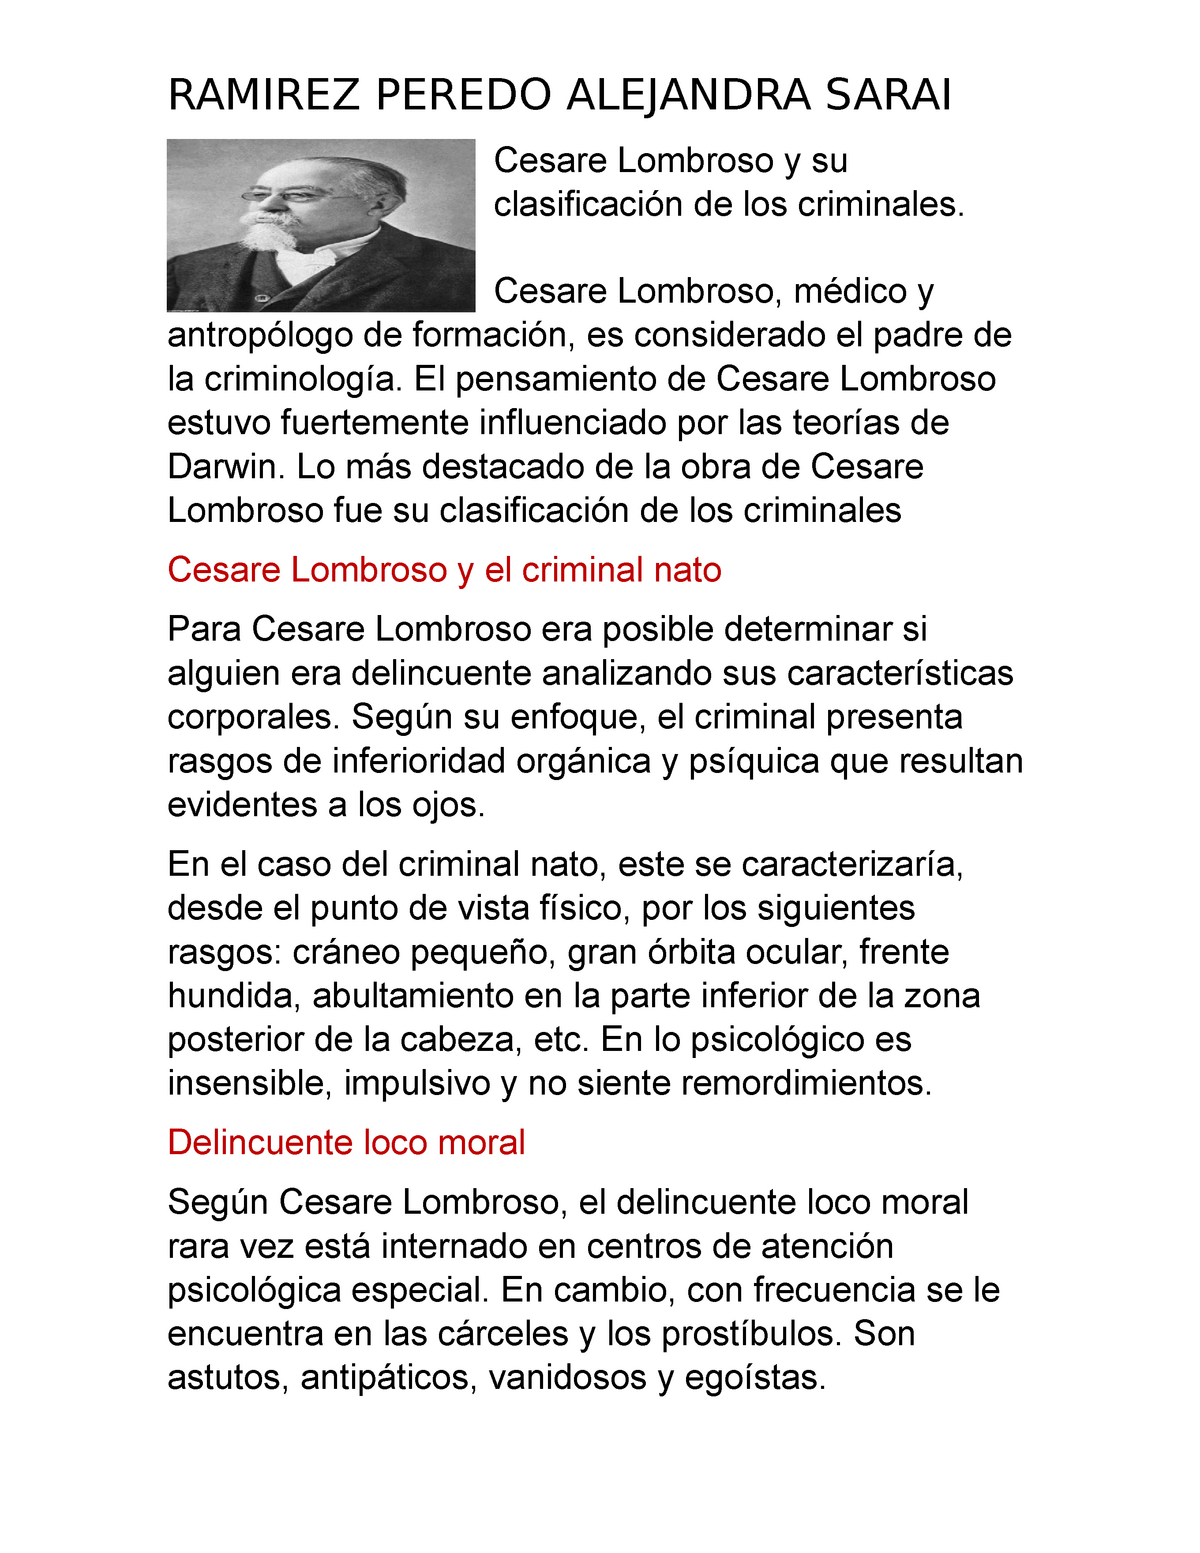 Cesare Lombroso y su clasificación de los criminales Ramirez Peredo  Alejandra Sarai - RAMIREZ PEREDO - Studocu